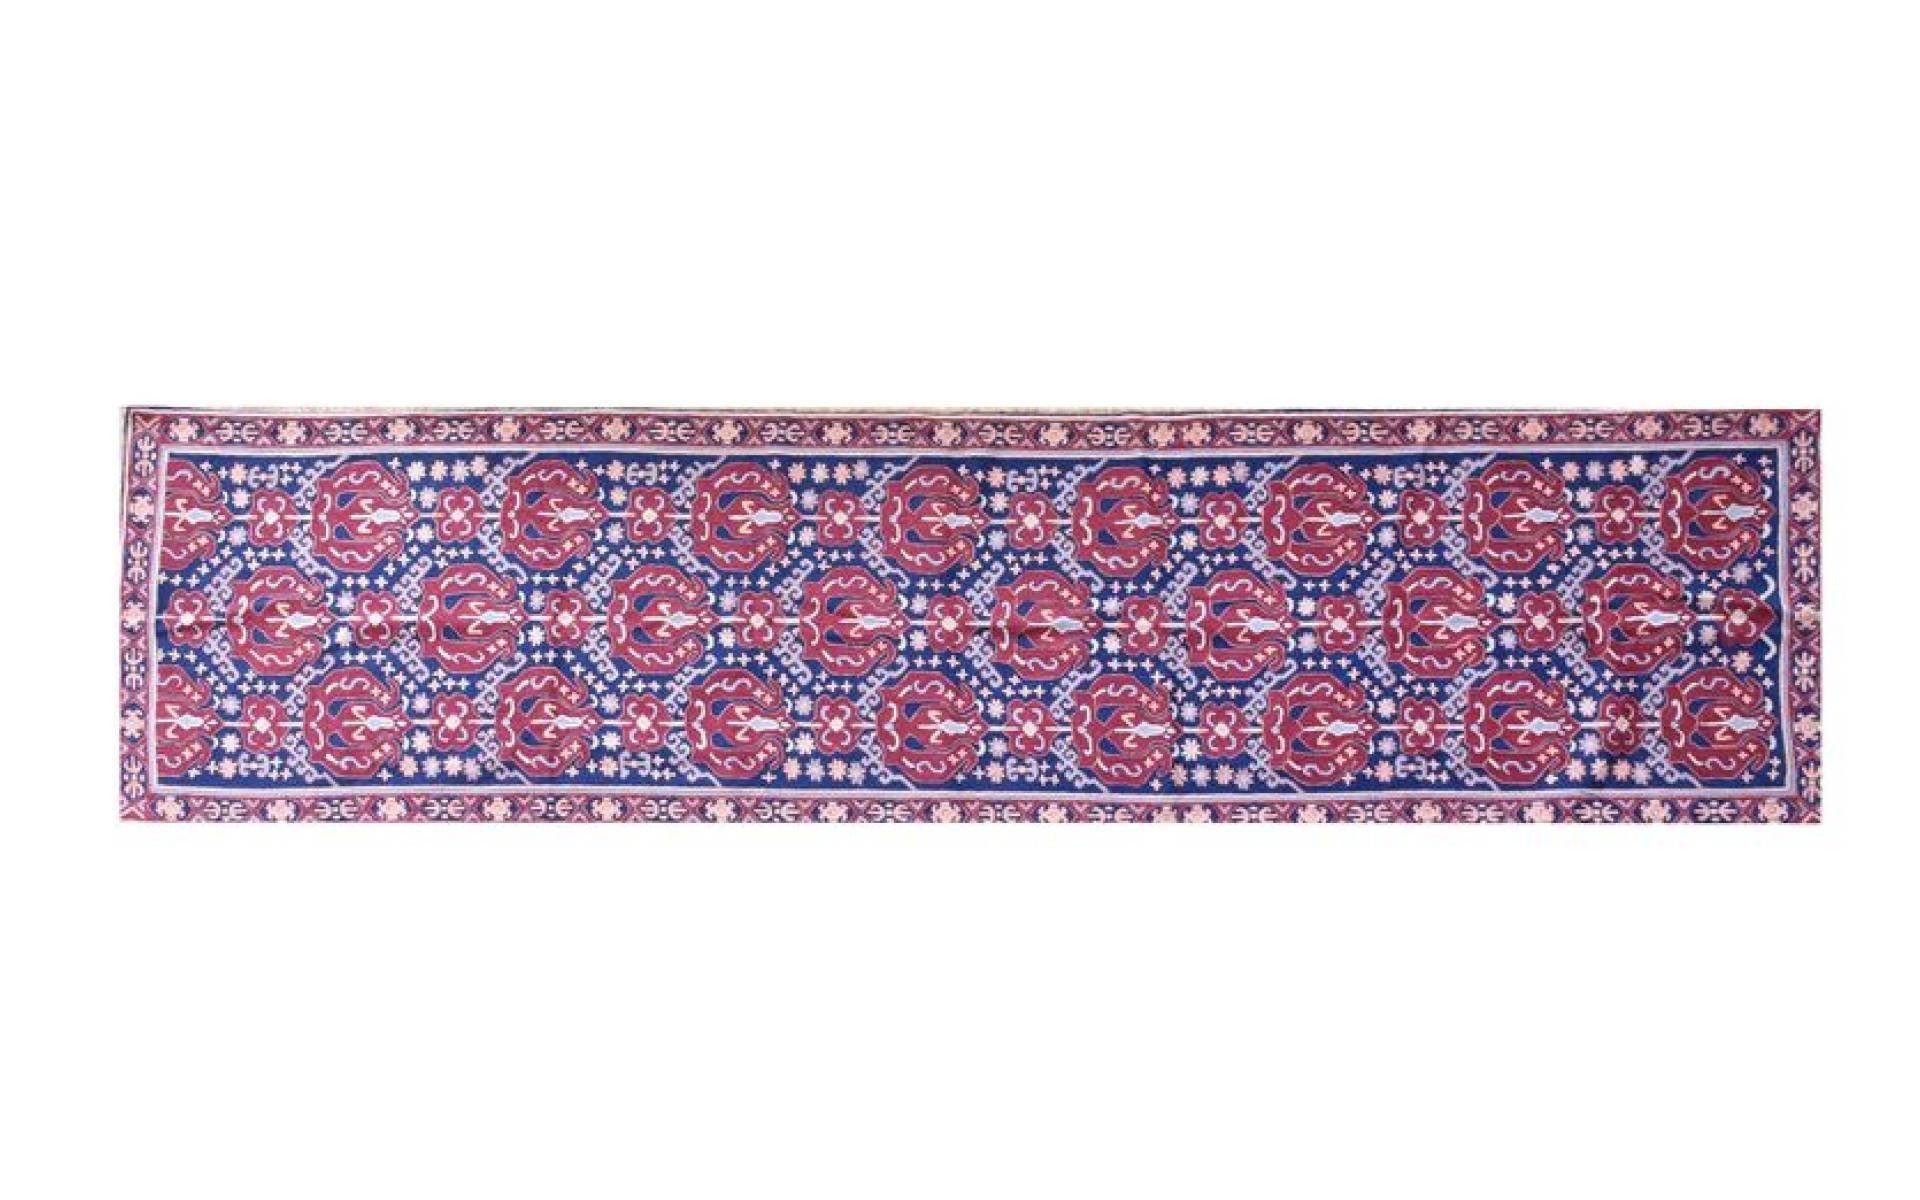 Ručne vyšívaný koberec/tapiséria, výšivka z kašmírskej vlny, 296x76cm